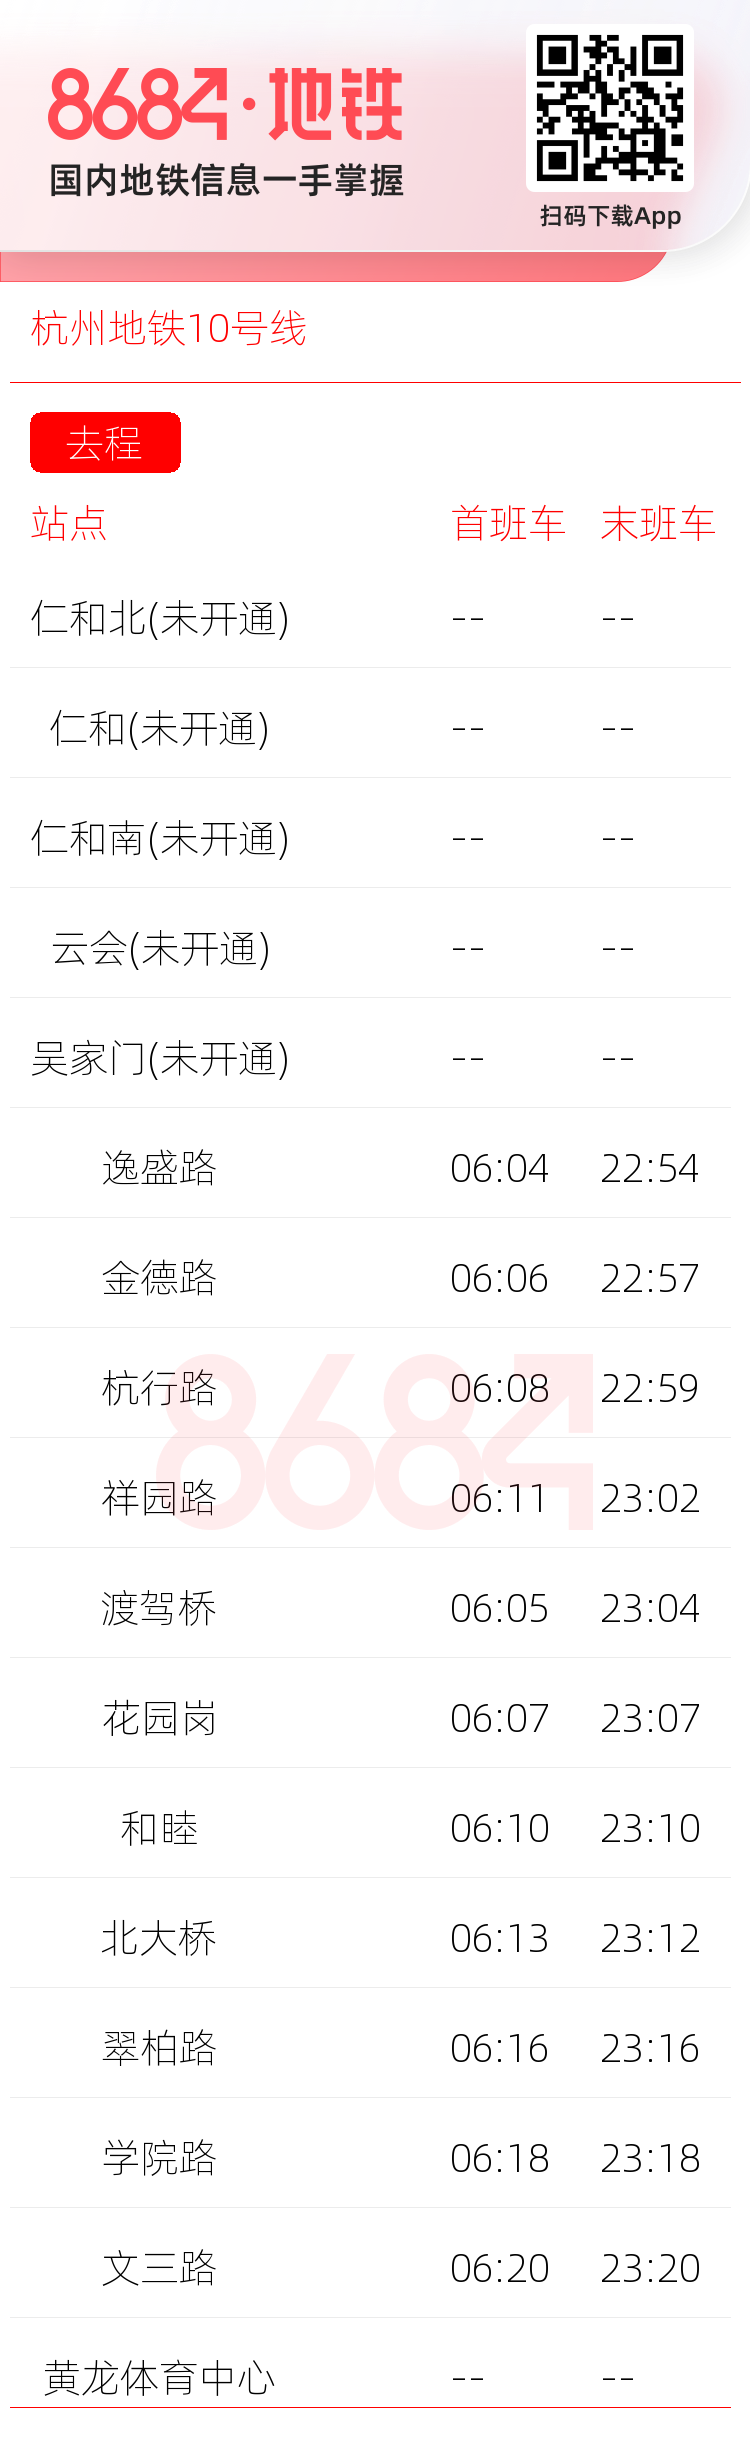 杭州地铁10号线运营时间表